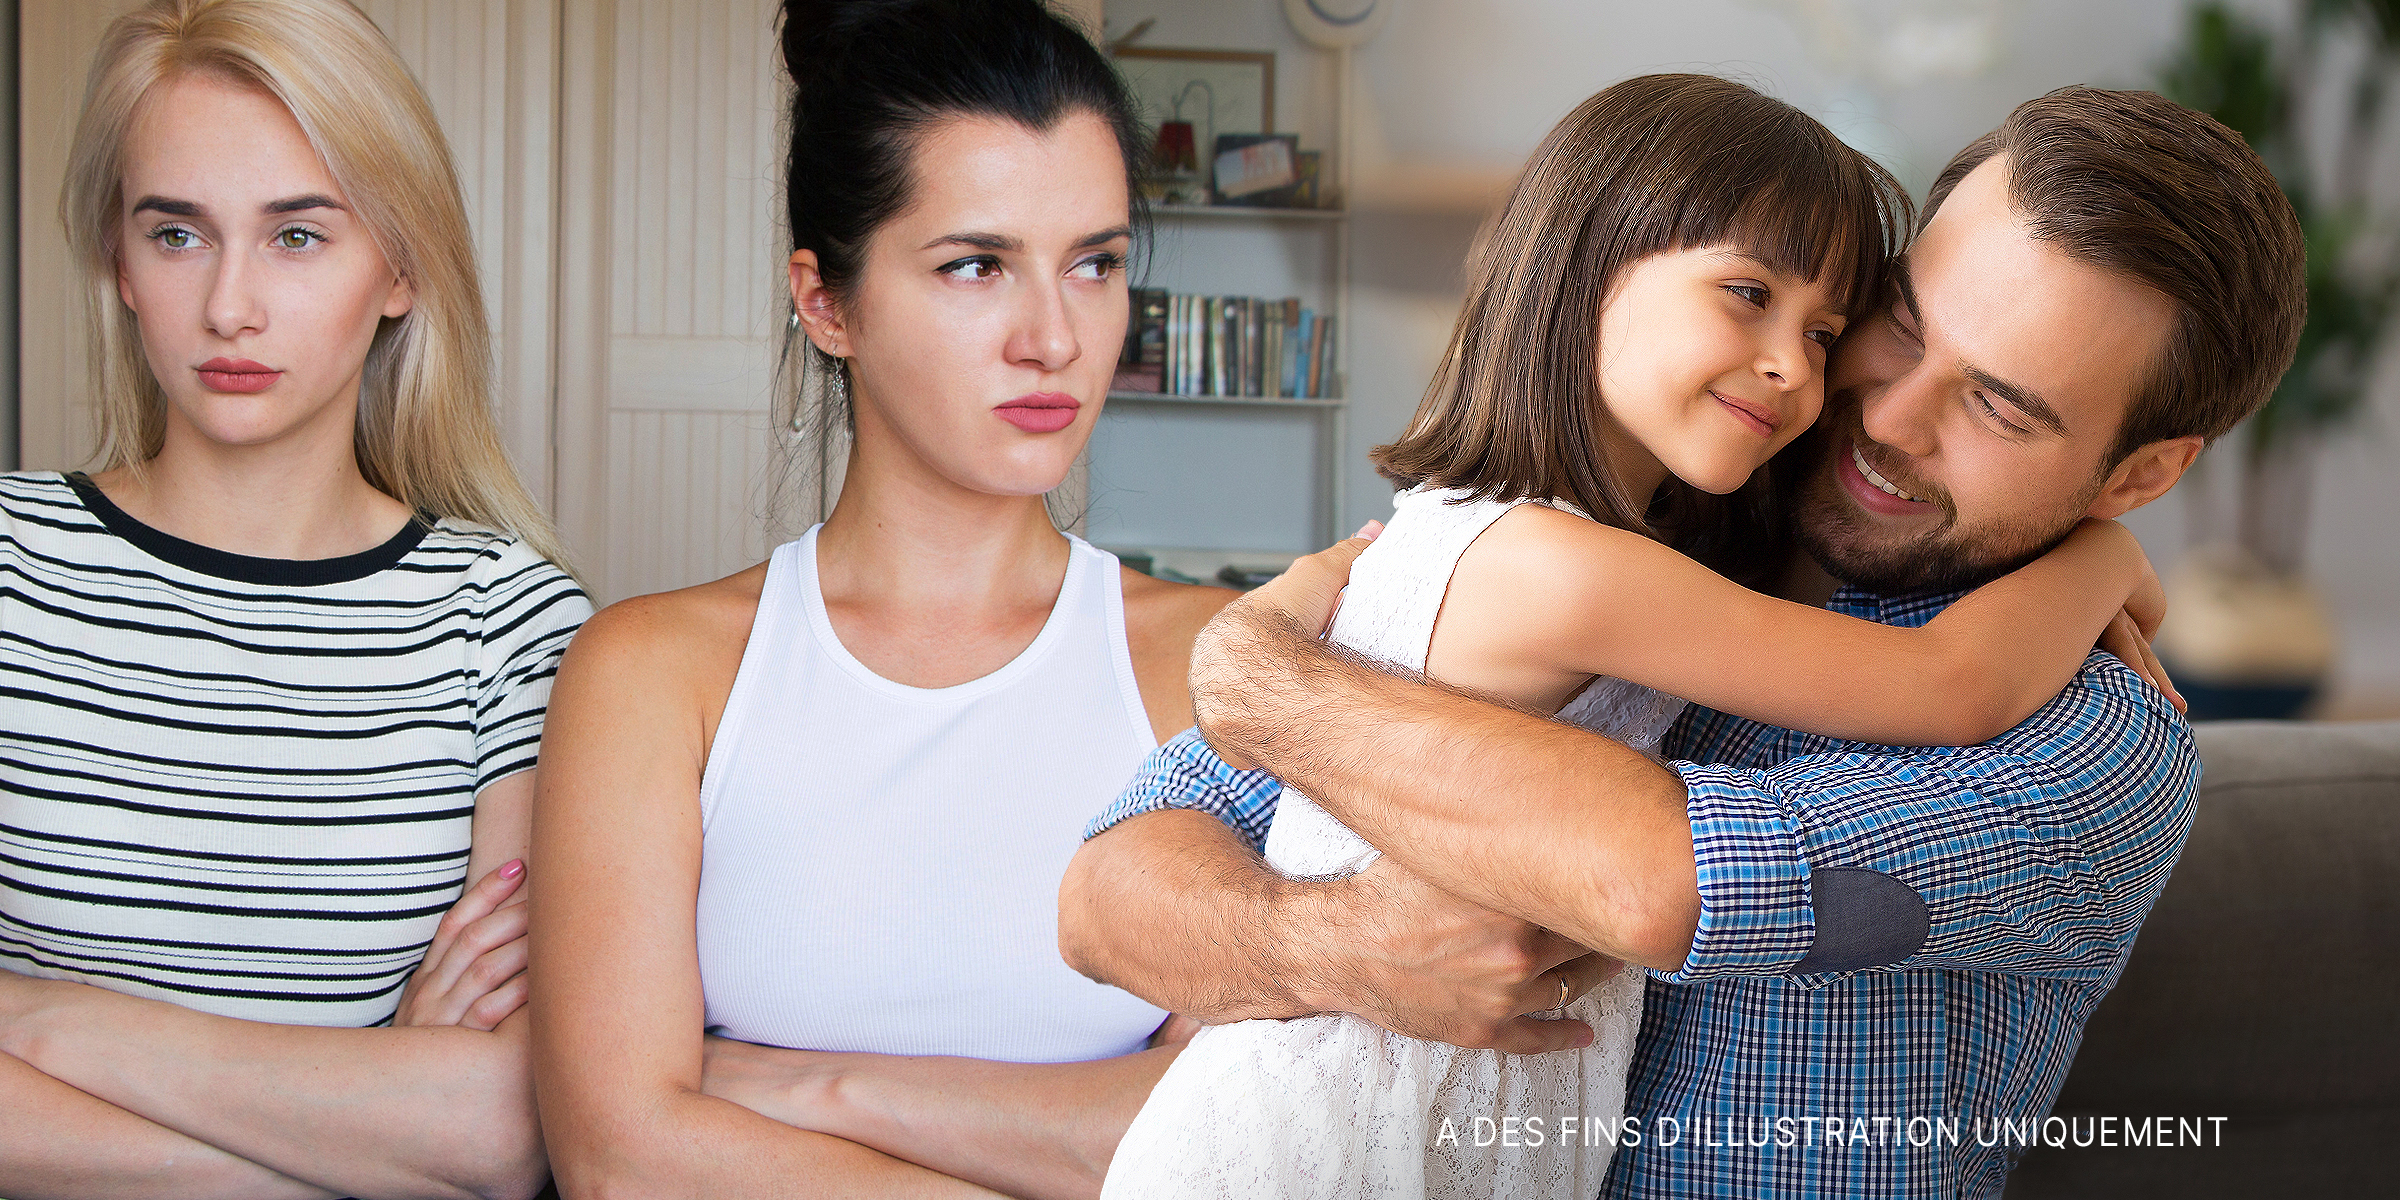 Deux grandes filles bouleversées tandis qu'un homme serre fort sa fille cadette | Source : Shutterstock